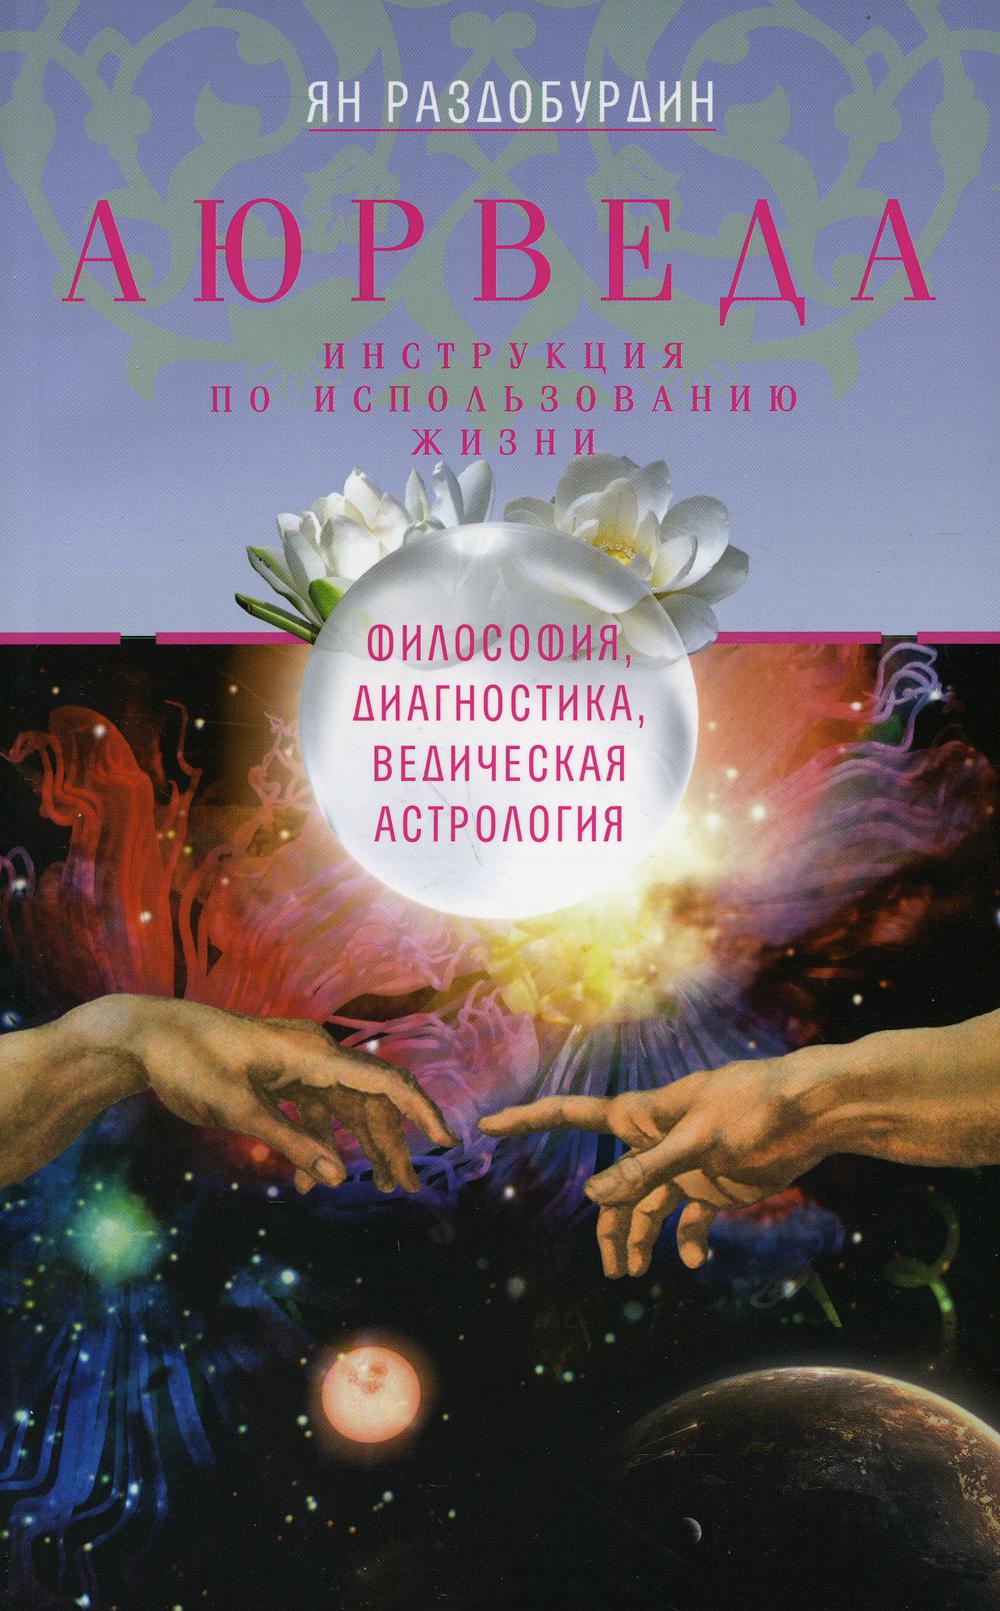 Аюрведа. Философия, диагностика, ведическая астрология. 2-е изд